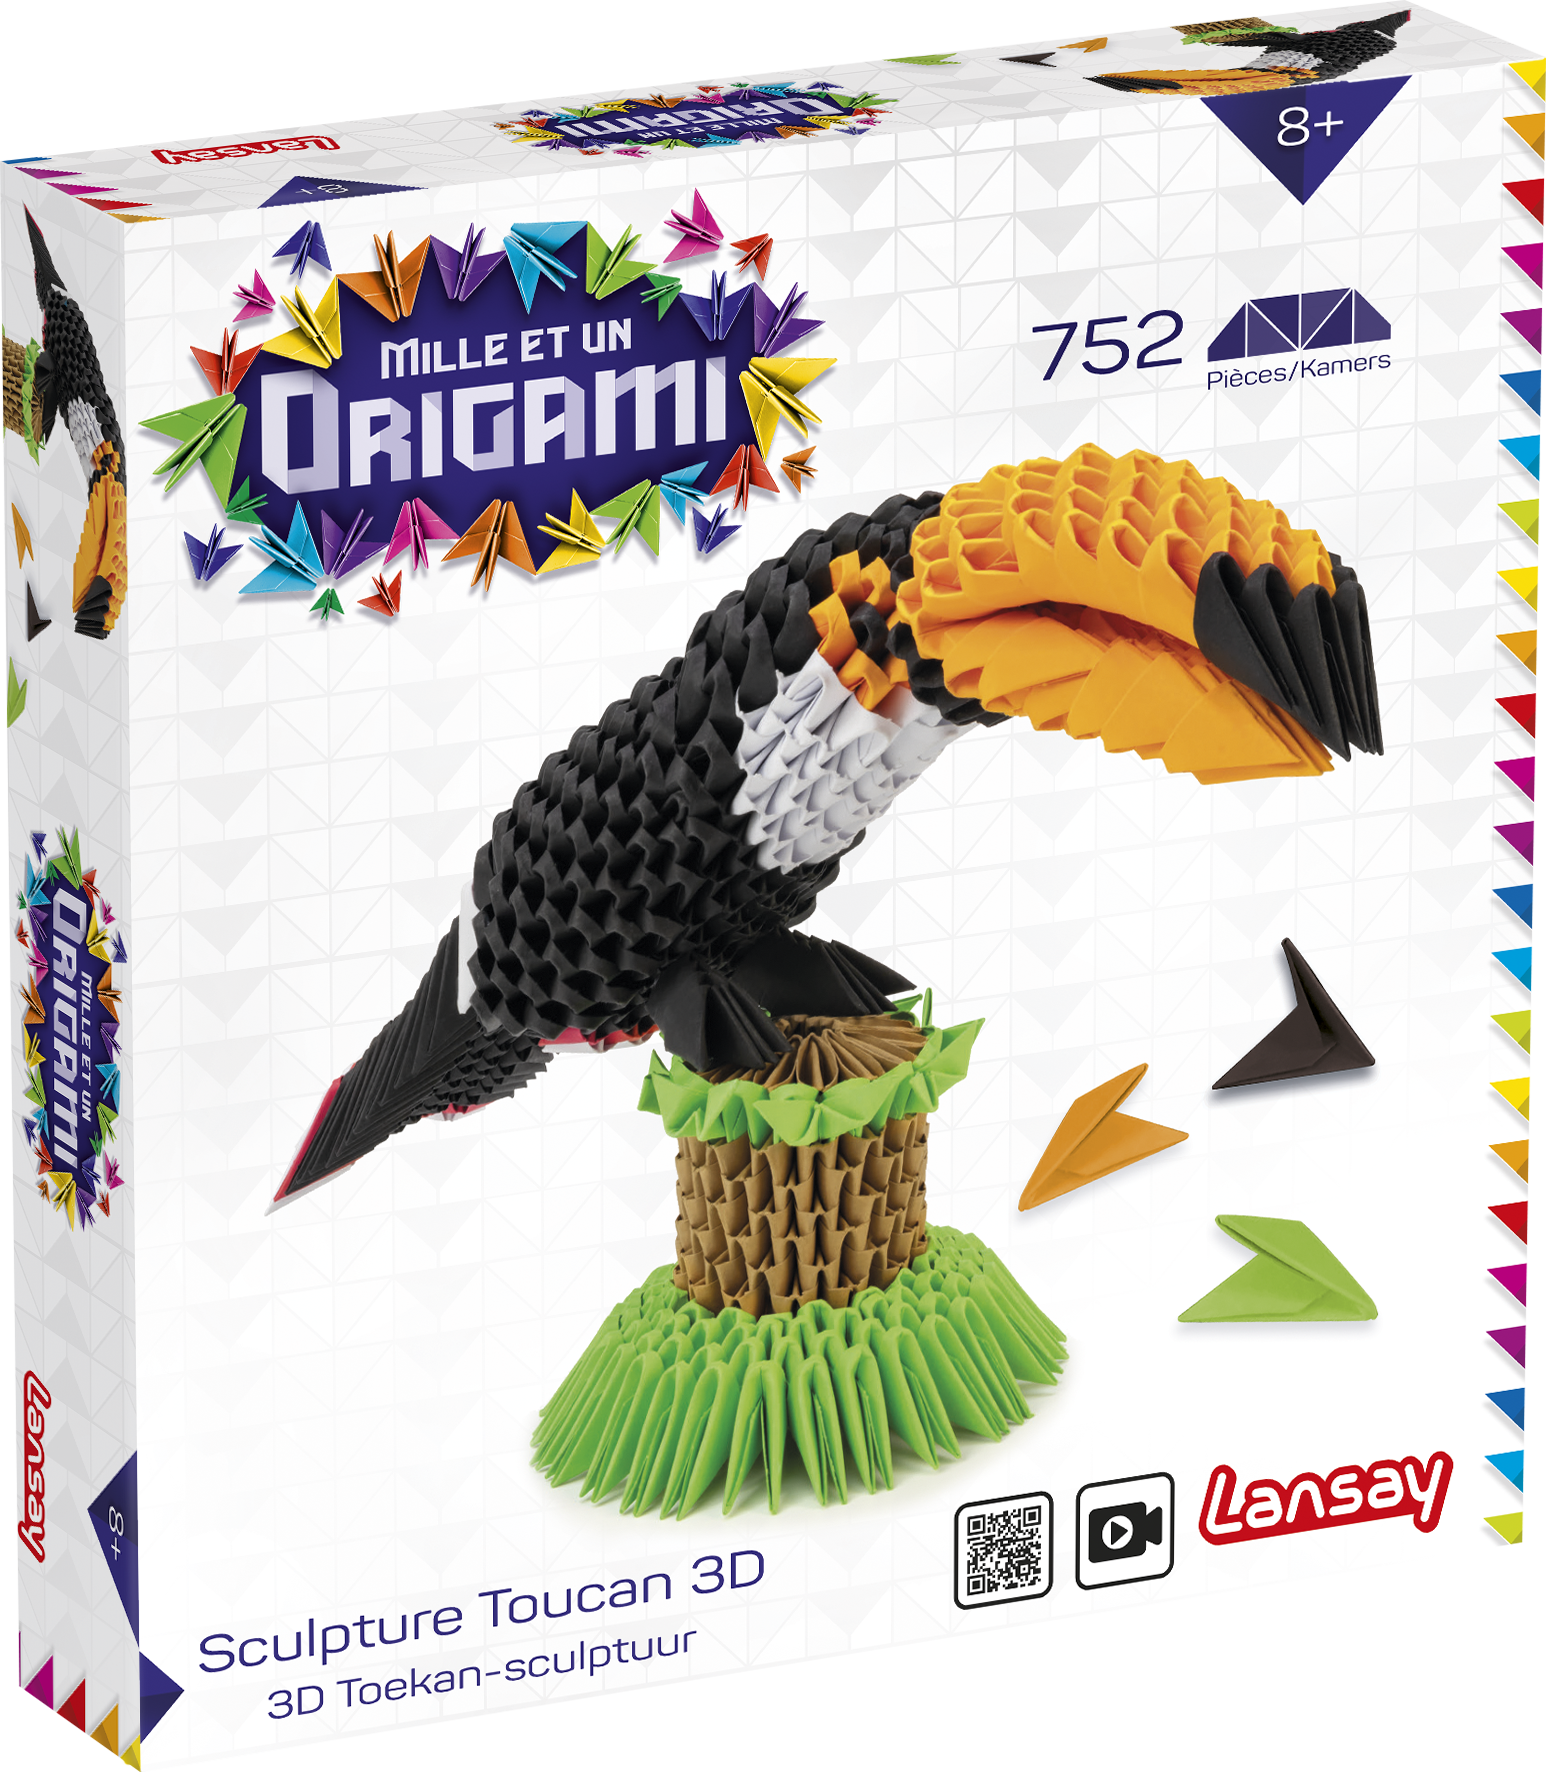 Mille et Un Origami-Scultura Paon 3D Lansay 20441 Multicolore 